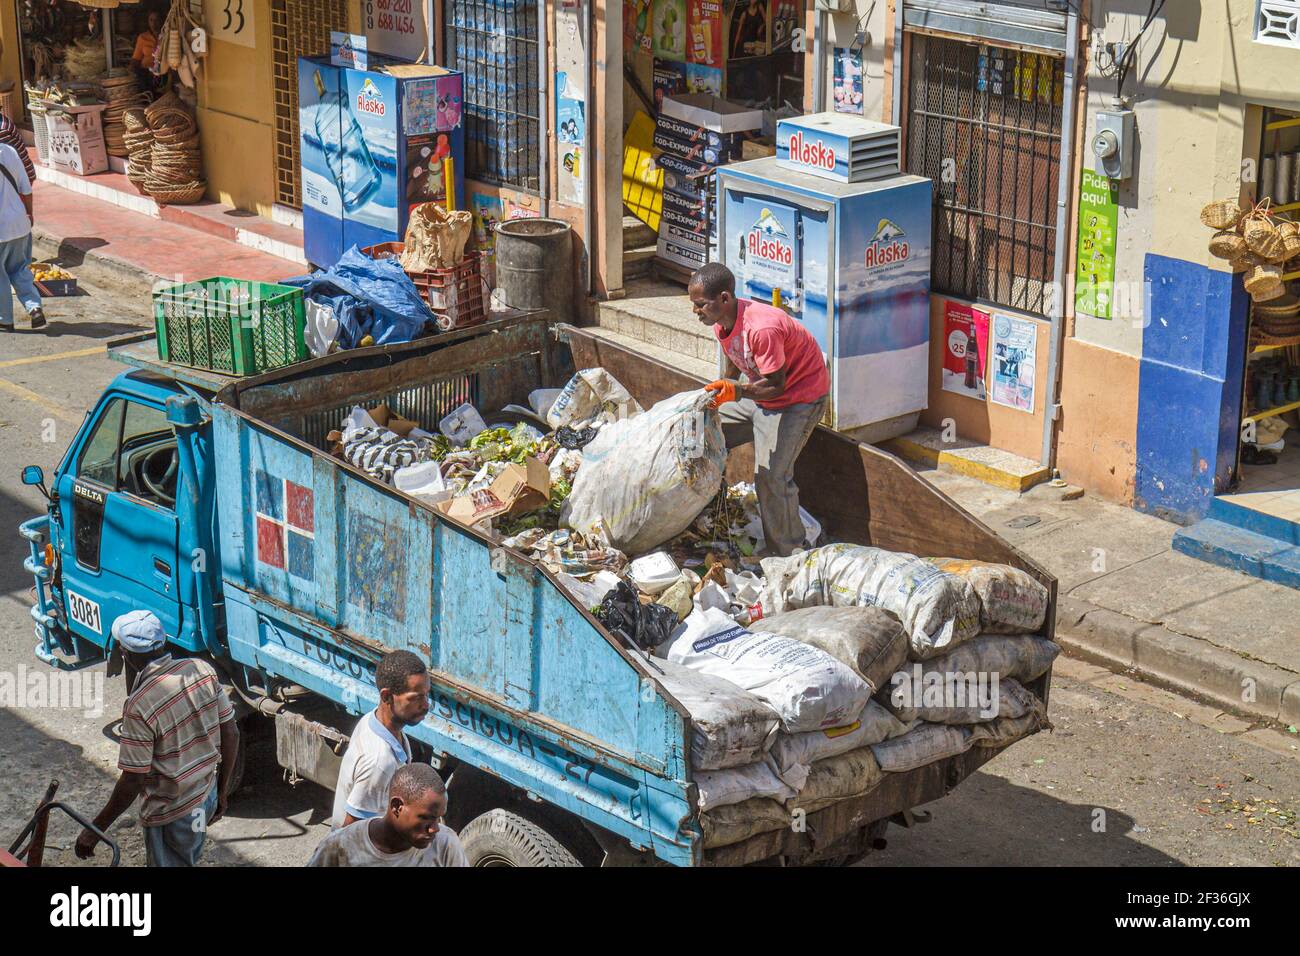 Santo Domingo Repubblica Dominicana, Ciudad Colonia zona coloniale, Mercado Modela mercato raccolta rifiuti spazzatura smaltimento camion rifiuti, ispanici uomini neri, Foto Stock